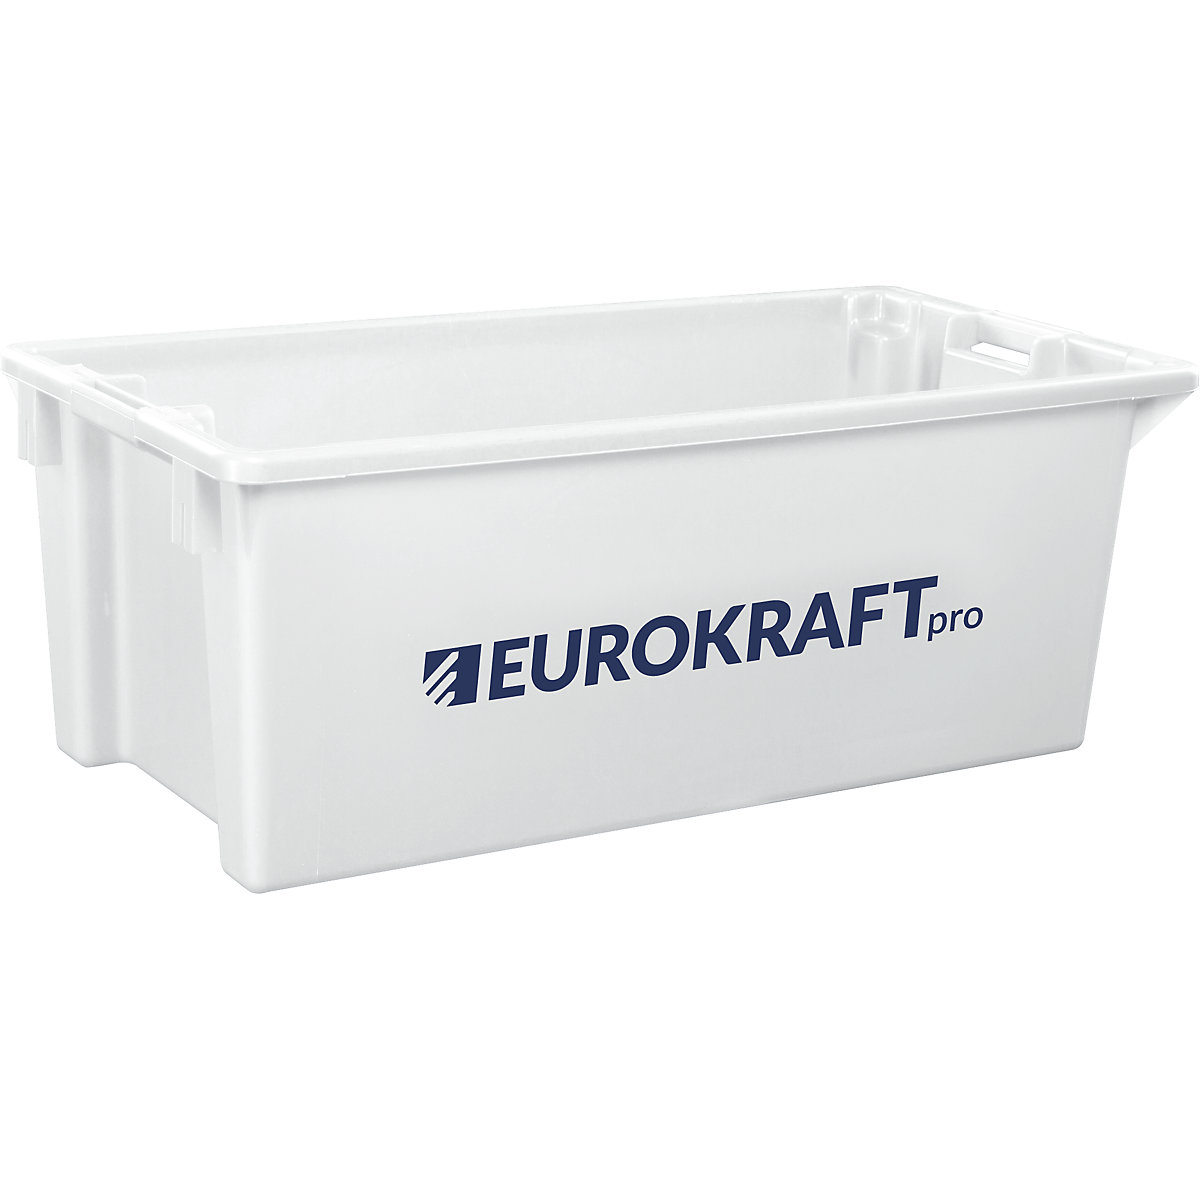 EUROKRAFTpro – Spremnik za slaganje od polipropilena pogodnog za kontakt s prehrambenim proizvodima, volumen 13 l, pak. 4 kom., zatvorene stijenke i dno, u prirodnoj boji